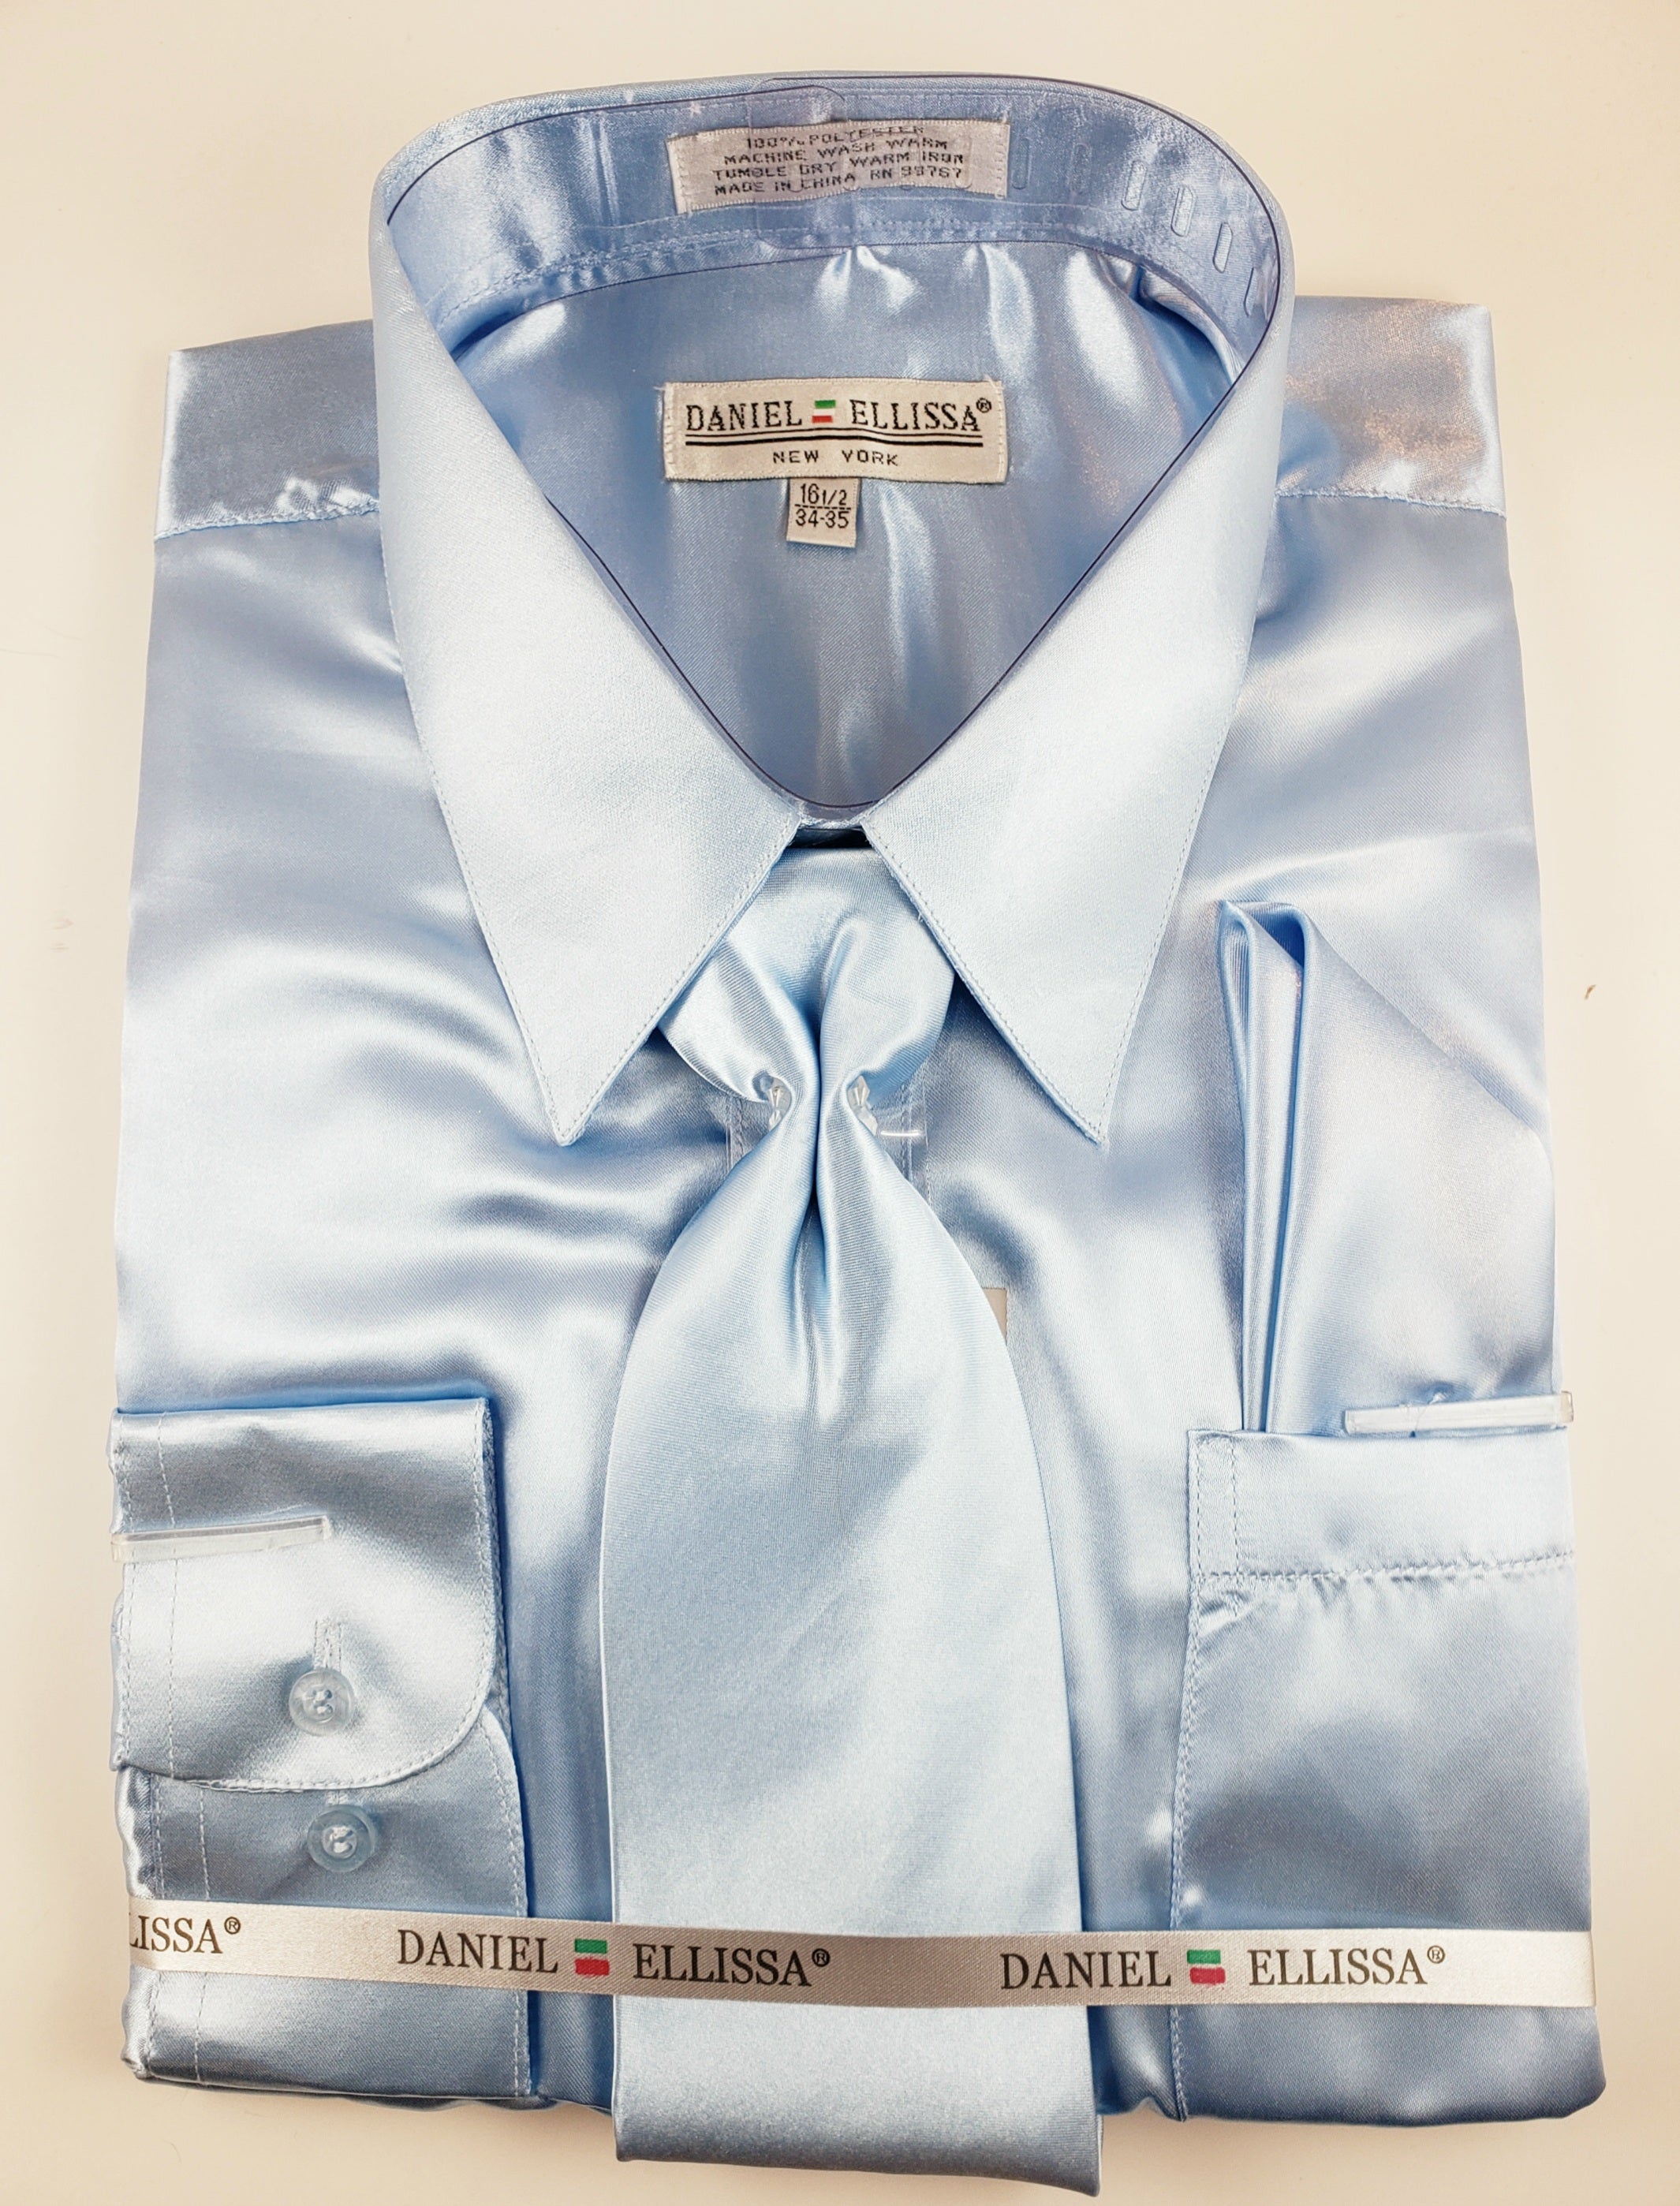 Satin Dress shirt with matching Tie set